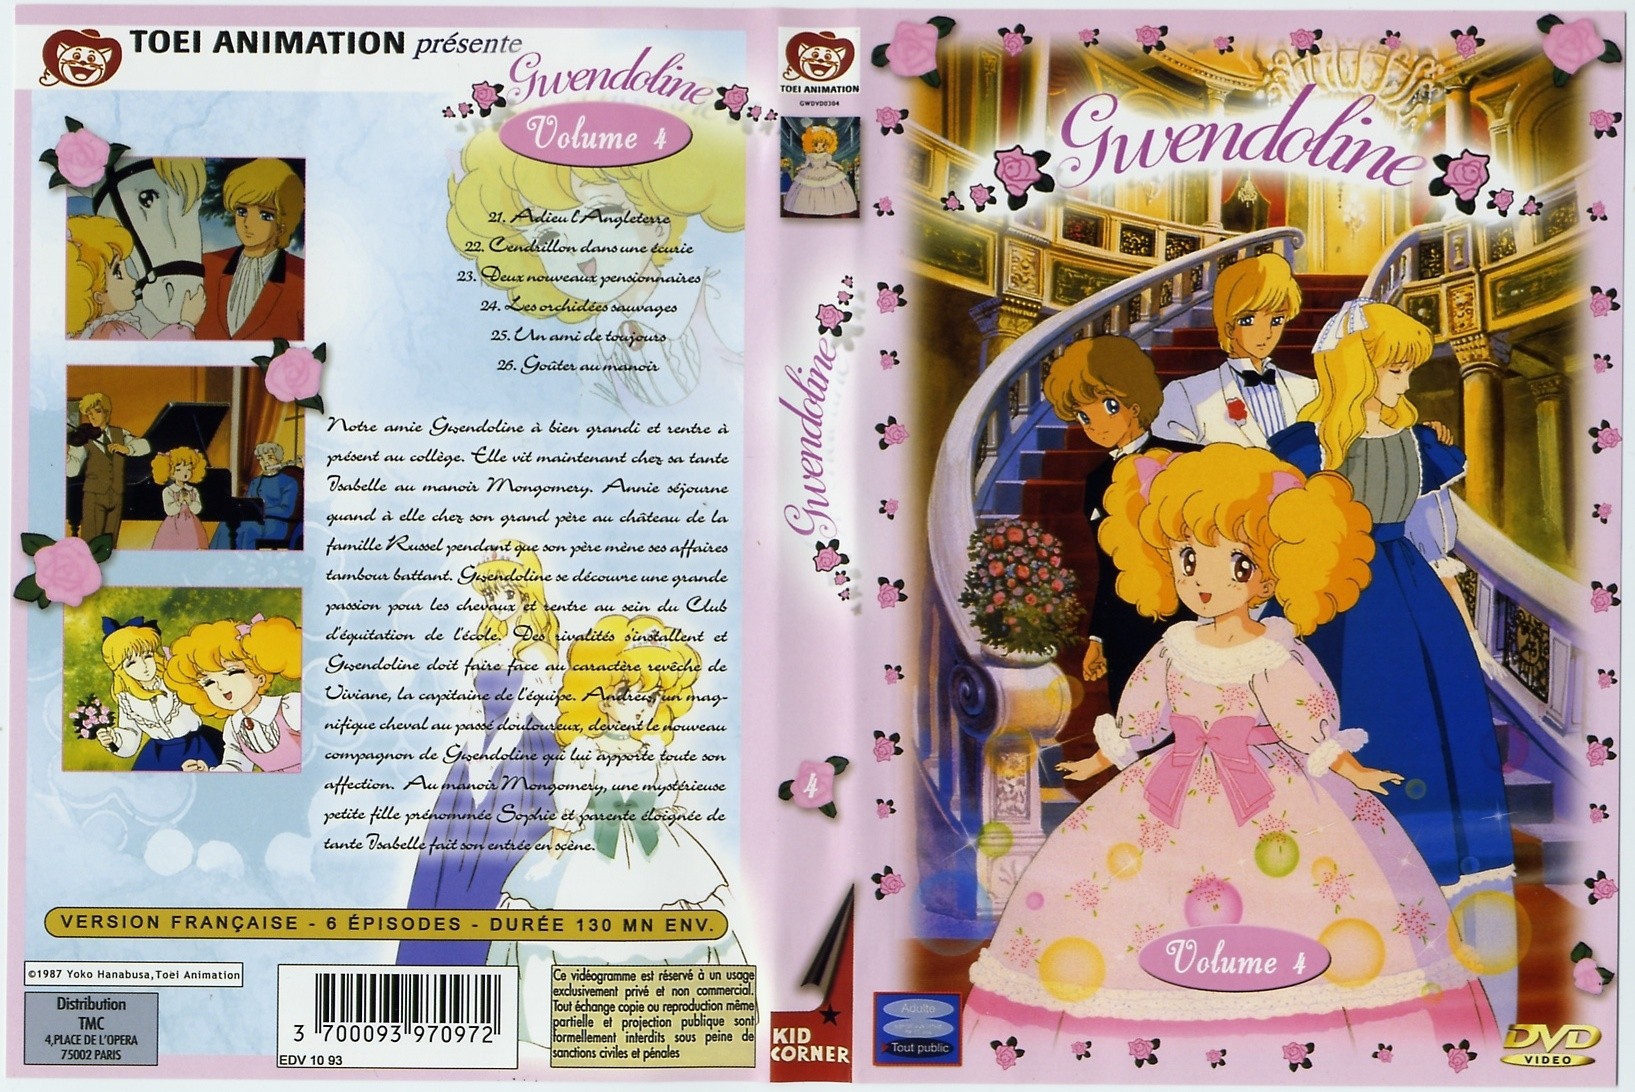 Jaquette DVD Gwendoline vol 4